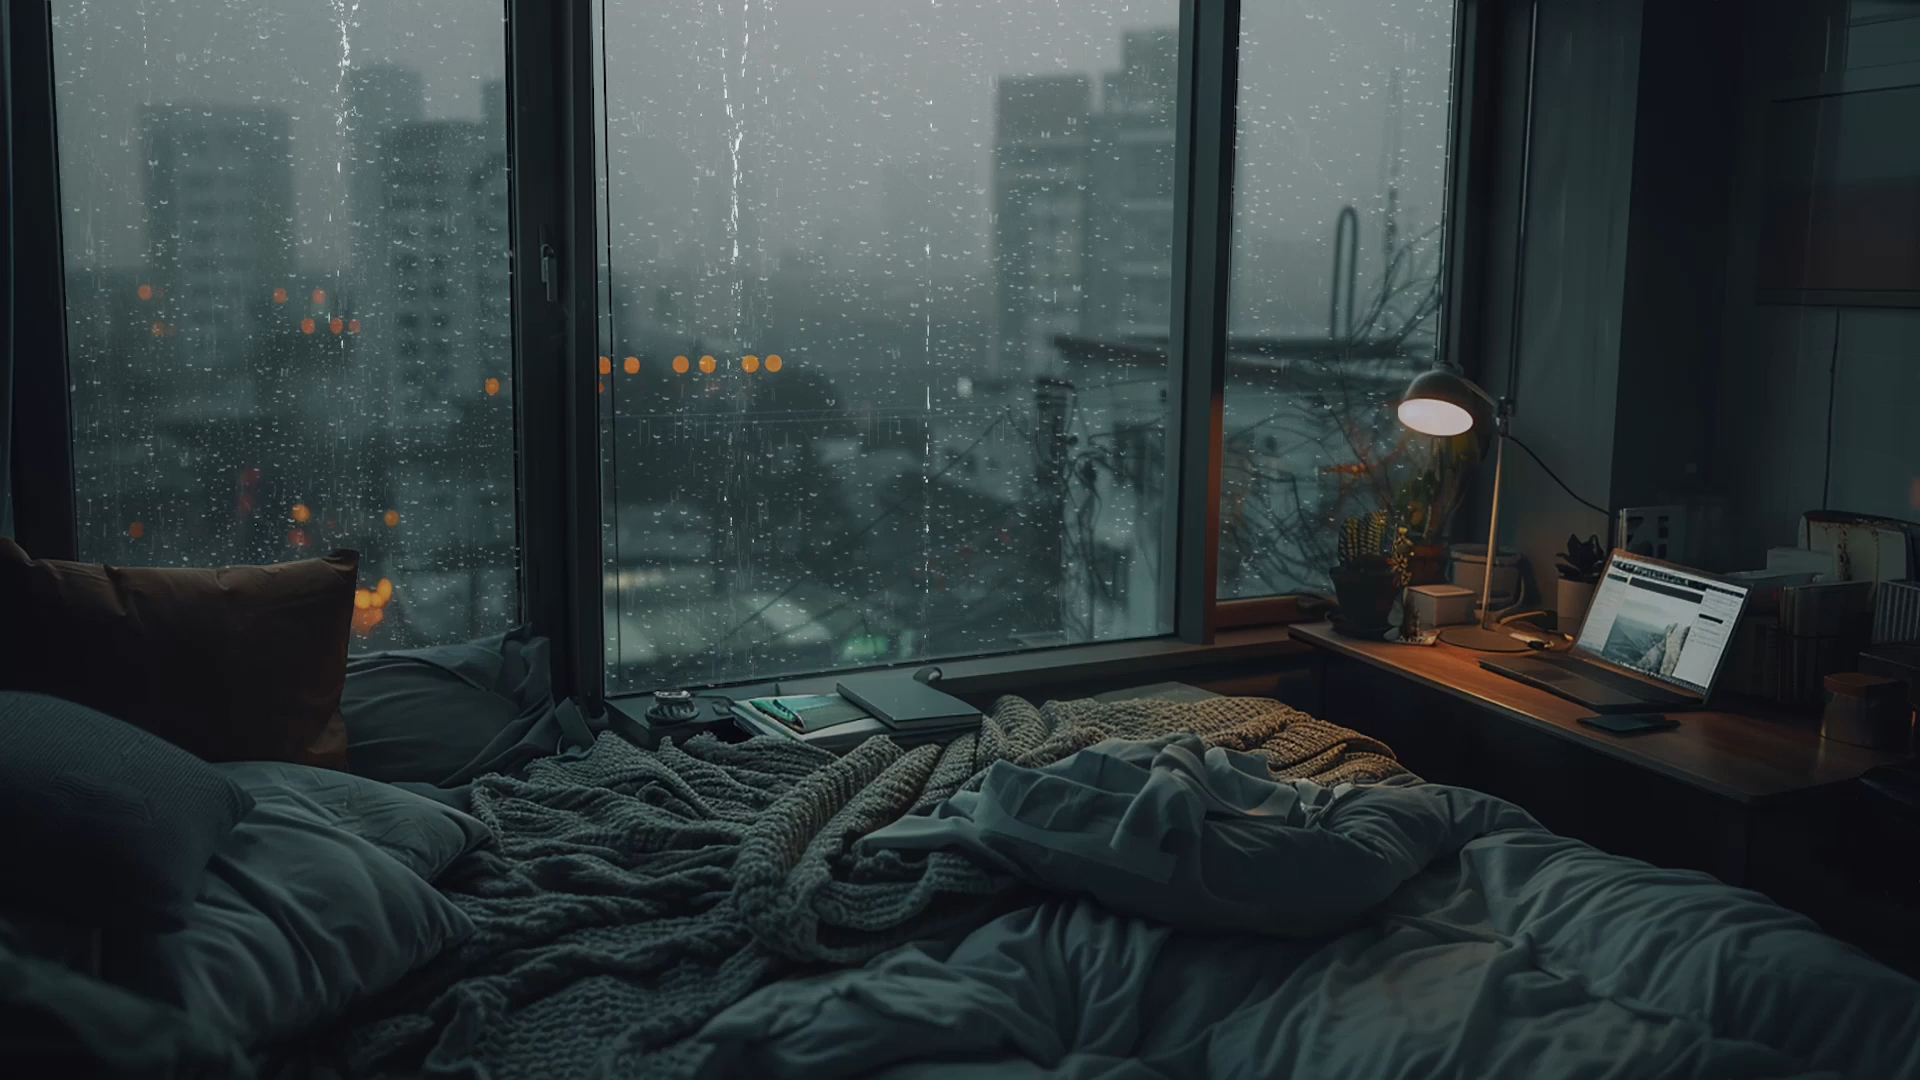 雨天的公寓楼，在舒服的大窗台前，躲在被窝里听着窗外电闪雷鸣，雨声助眠